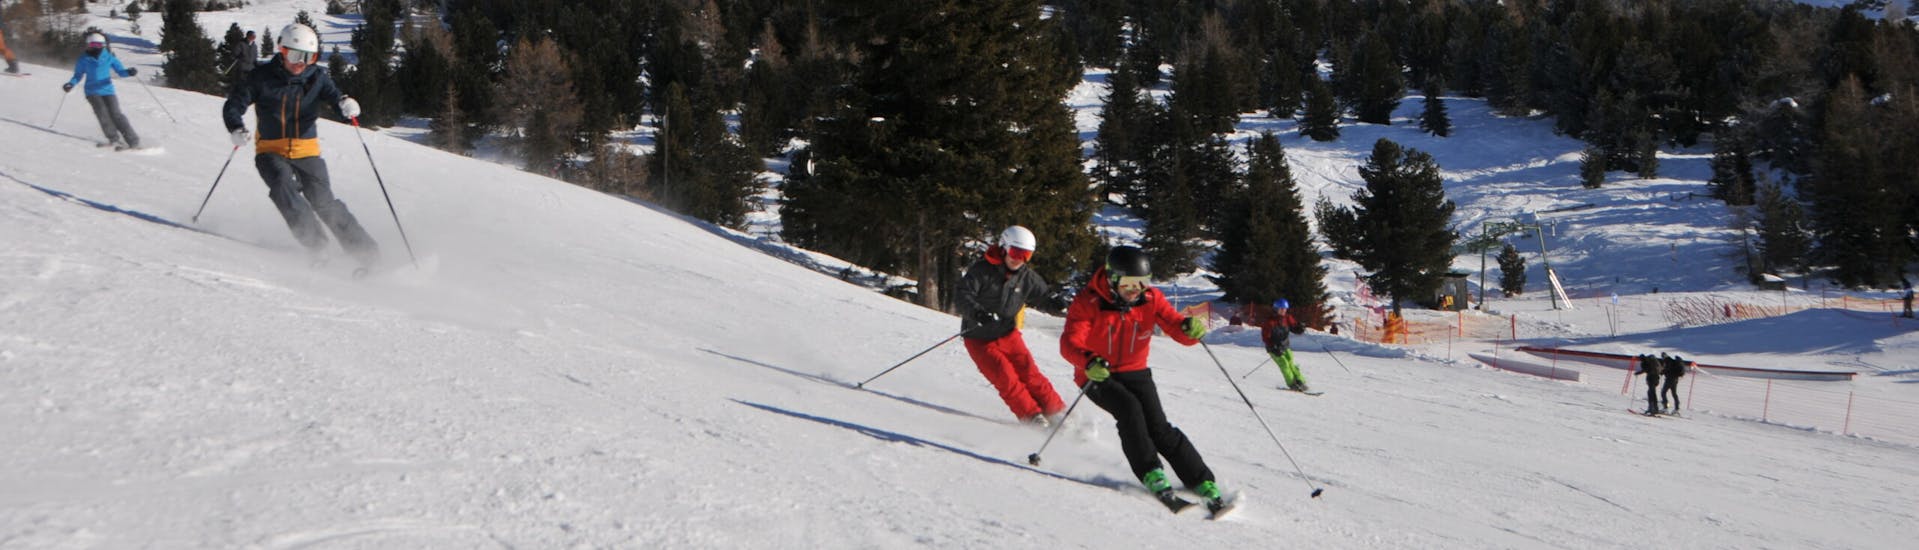 Privater Skikurs für Erwachsene mit Erfahrung mit Ski- & Snowboardschule Innsbruck.